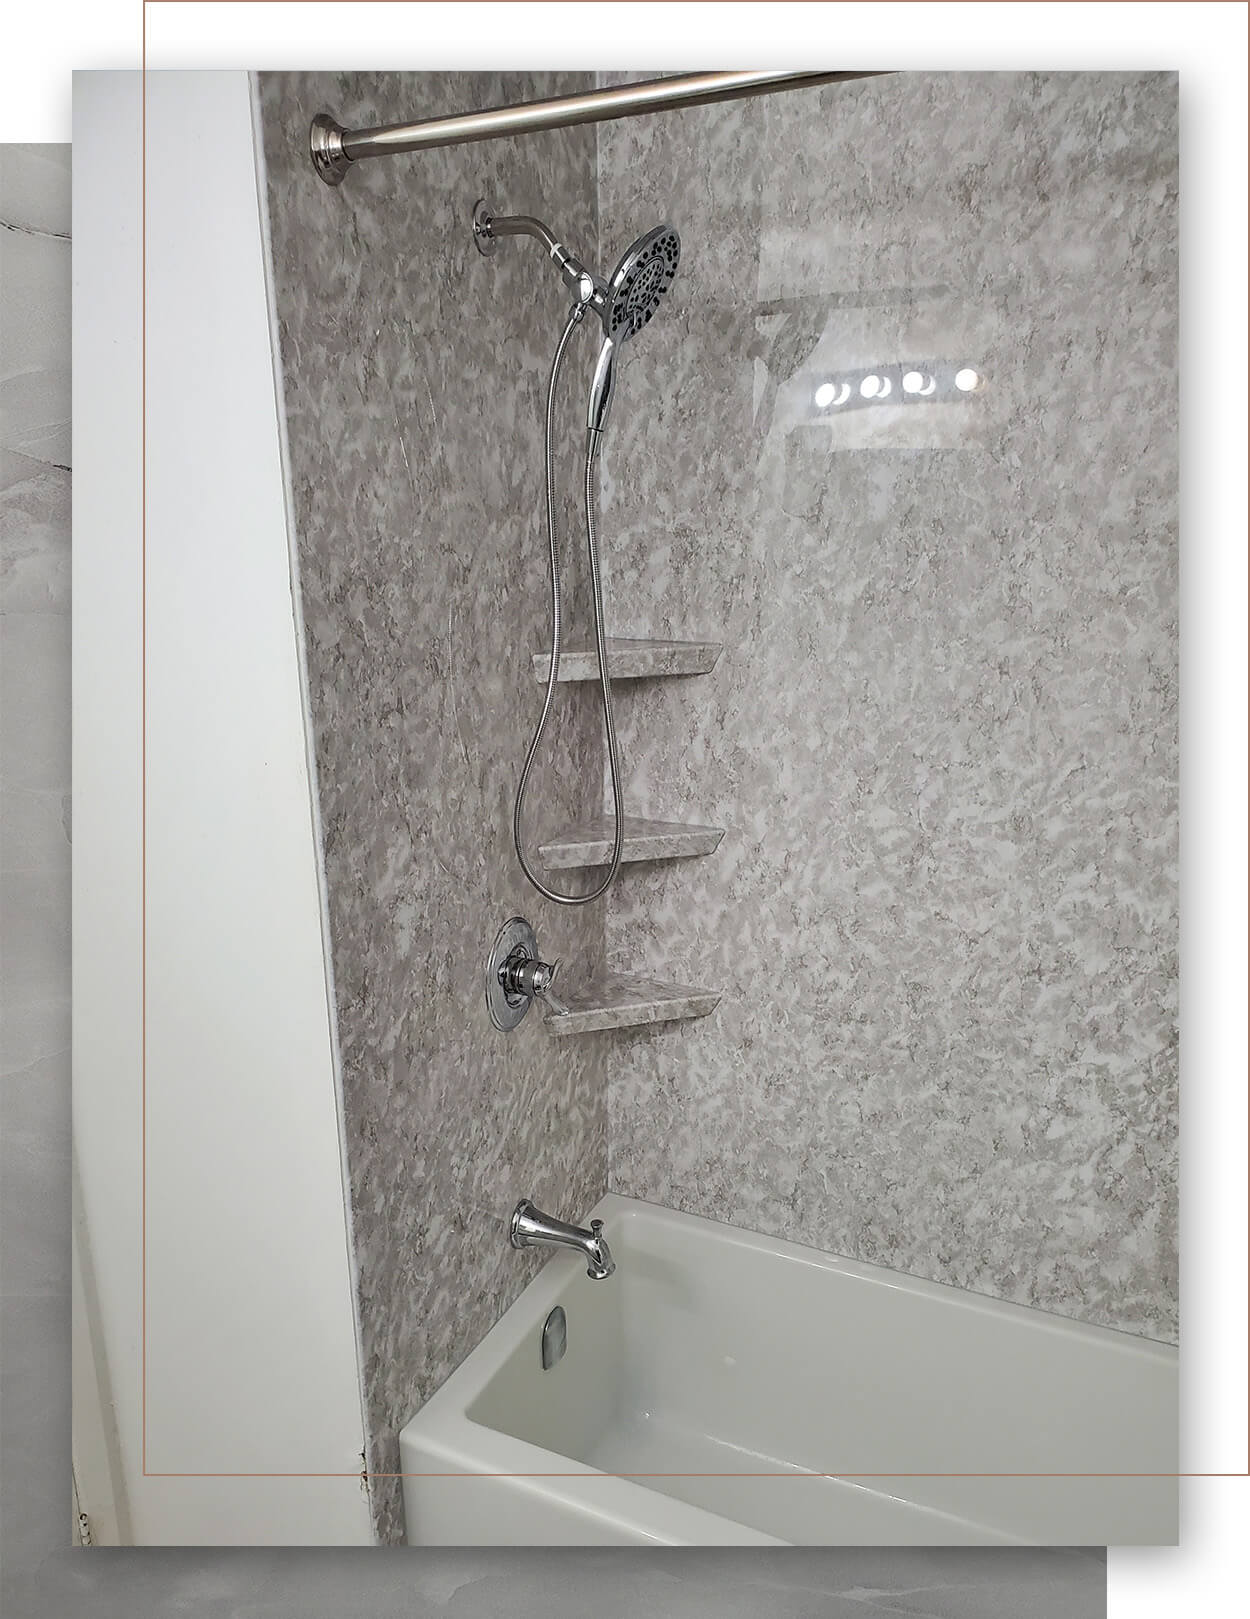 nan fiber wallboard in a shower